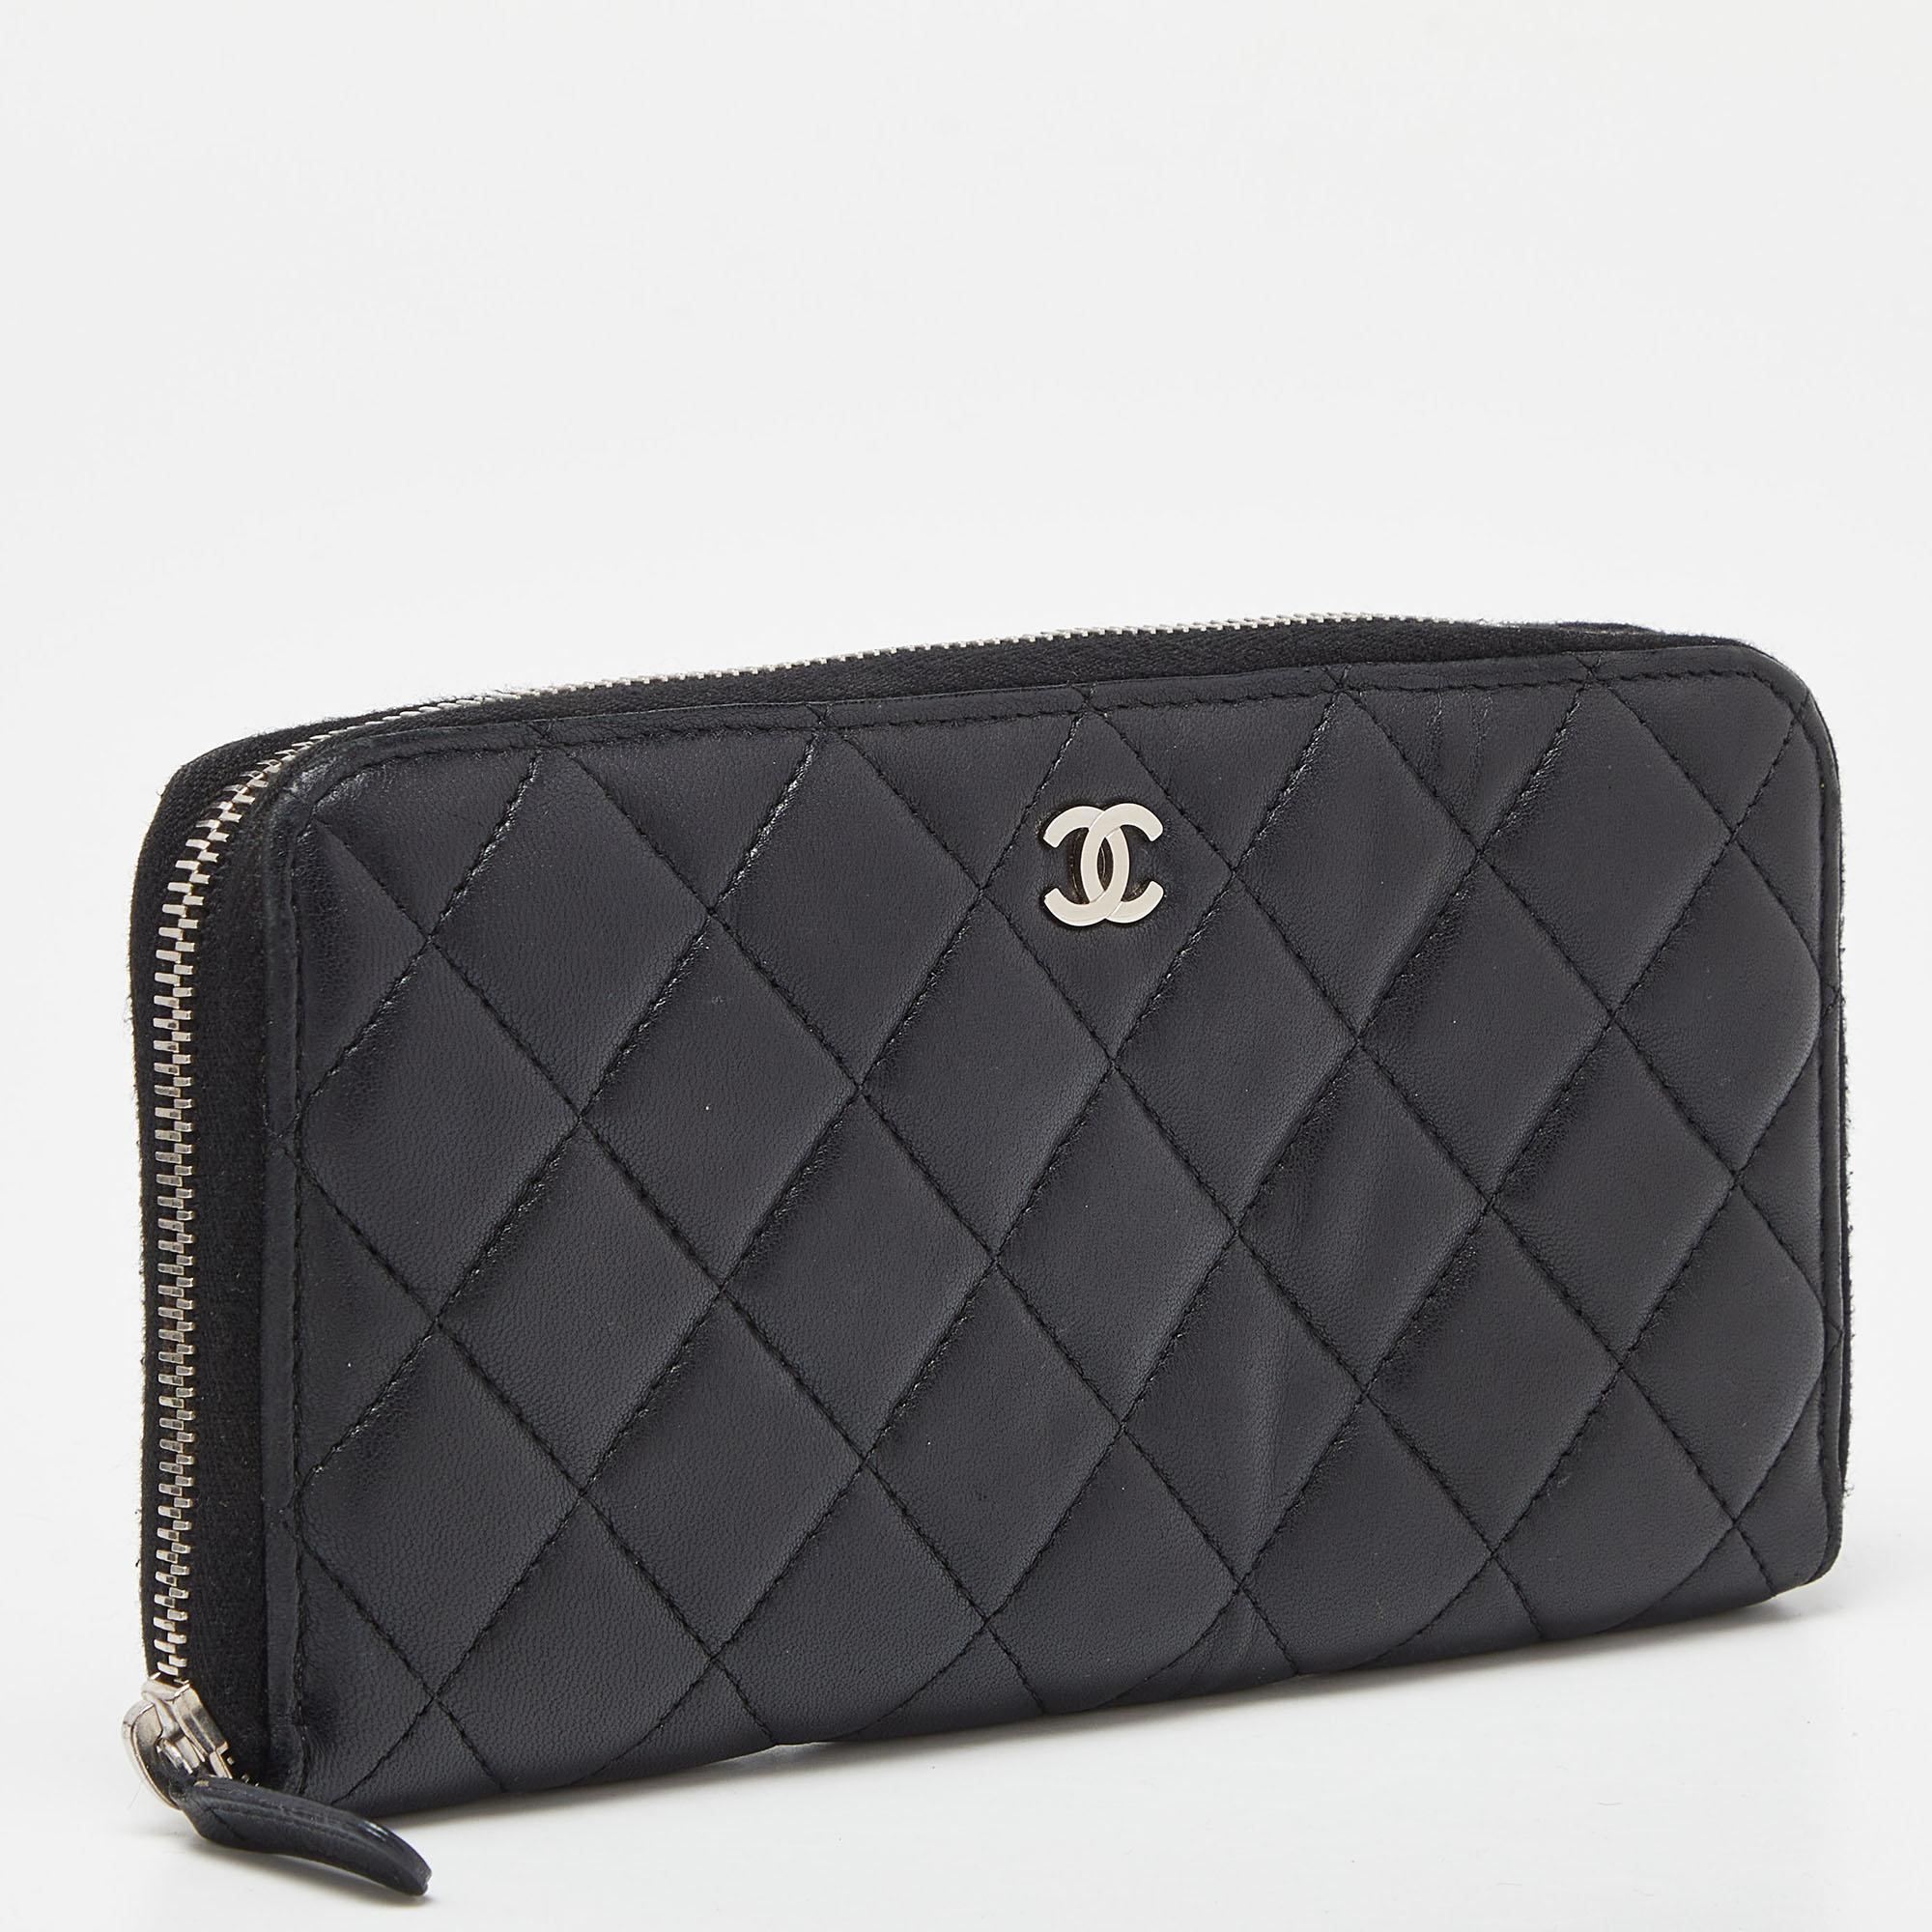 Dieses Chanel Portemonnaie wurde sorgfältig gefertigt, um Ihnen ein luxuriöses Accessoire zu bieten, das Sie zu schätzen wissen. Es zeichnet sich durch hohe Qualität und dauerhafte Attraktivität aus. Investieren Sie noch heute in